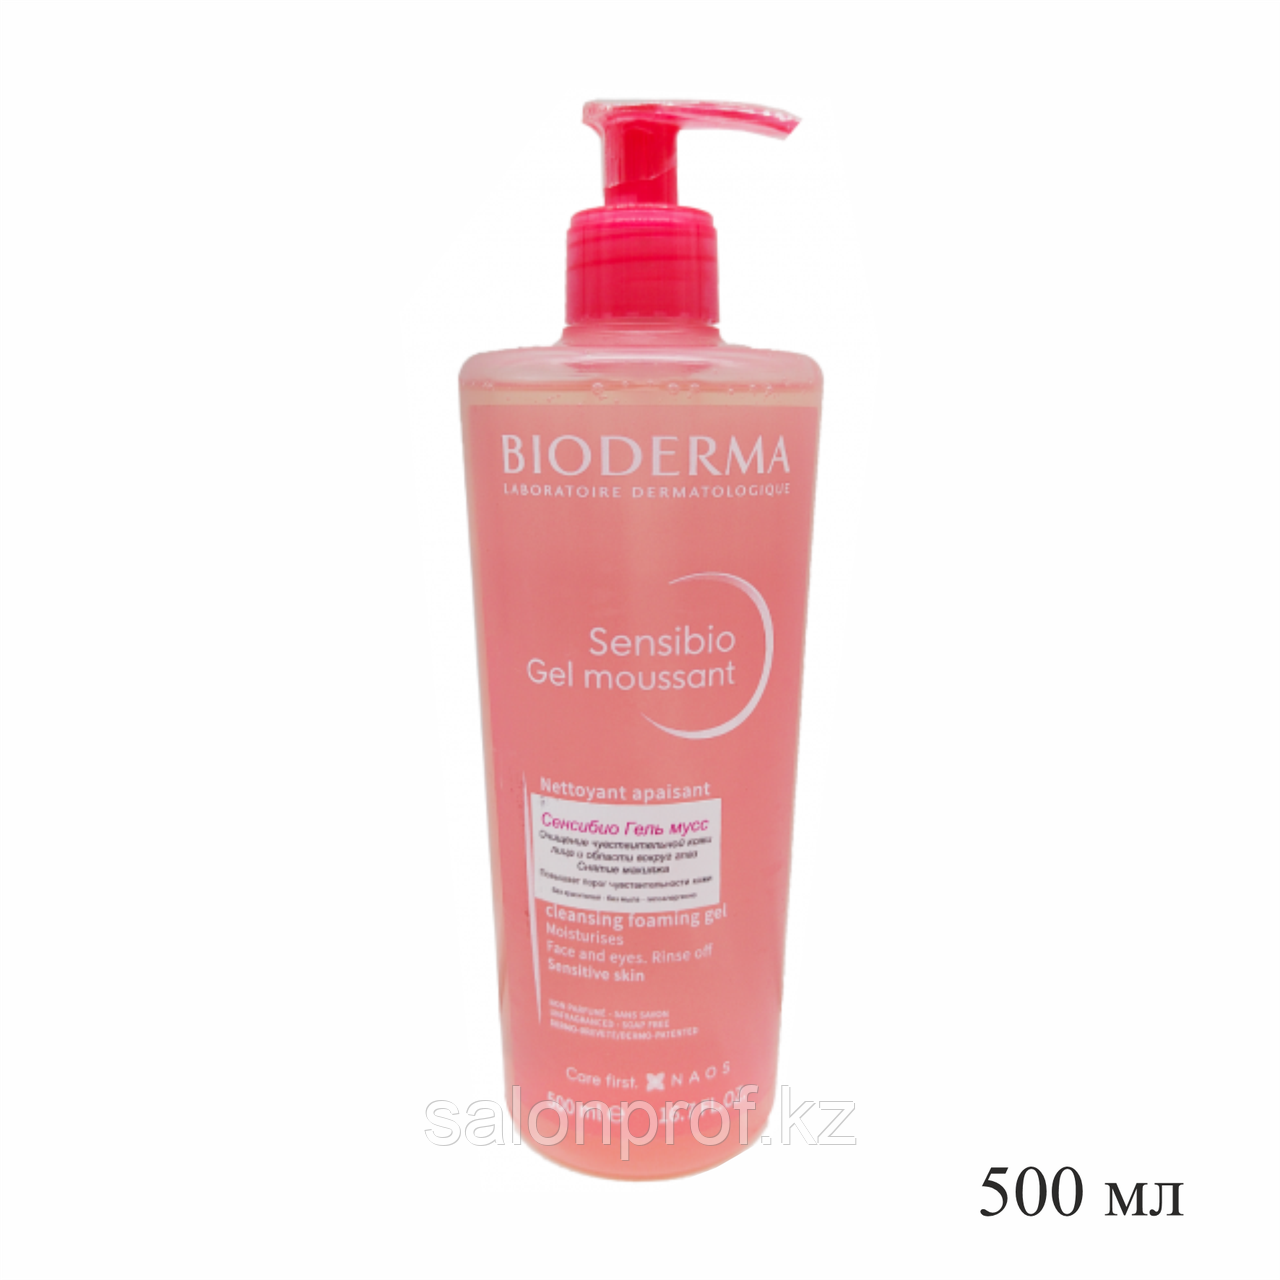 Гель-мусс Bioderma мягкий очищающий для чувствительной кожи 500 мл №00843